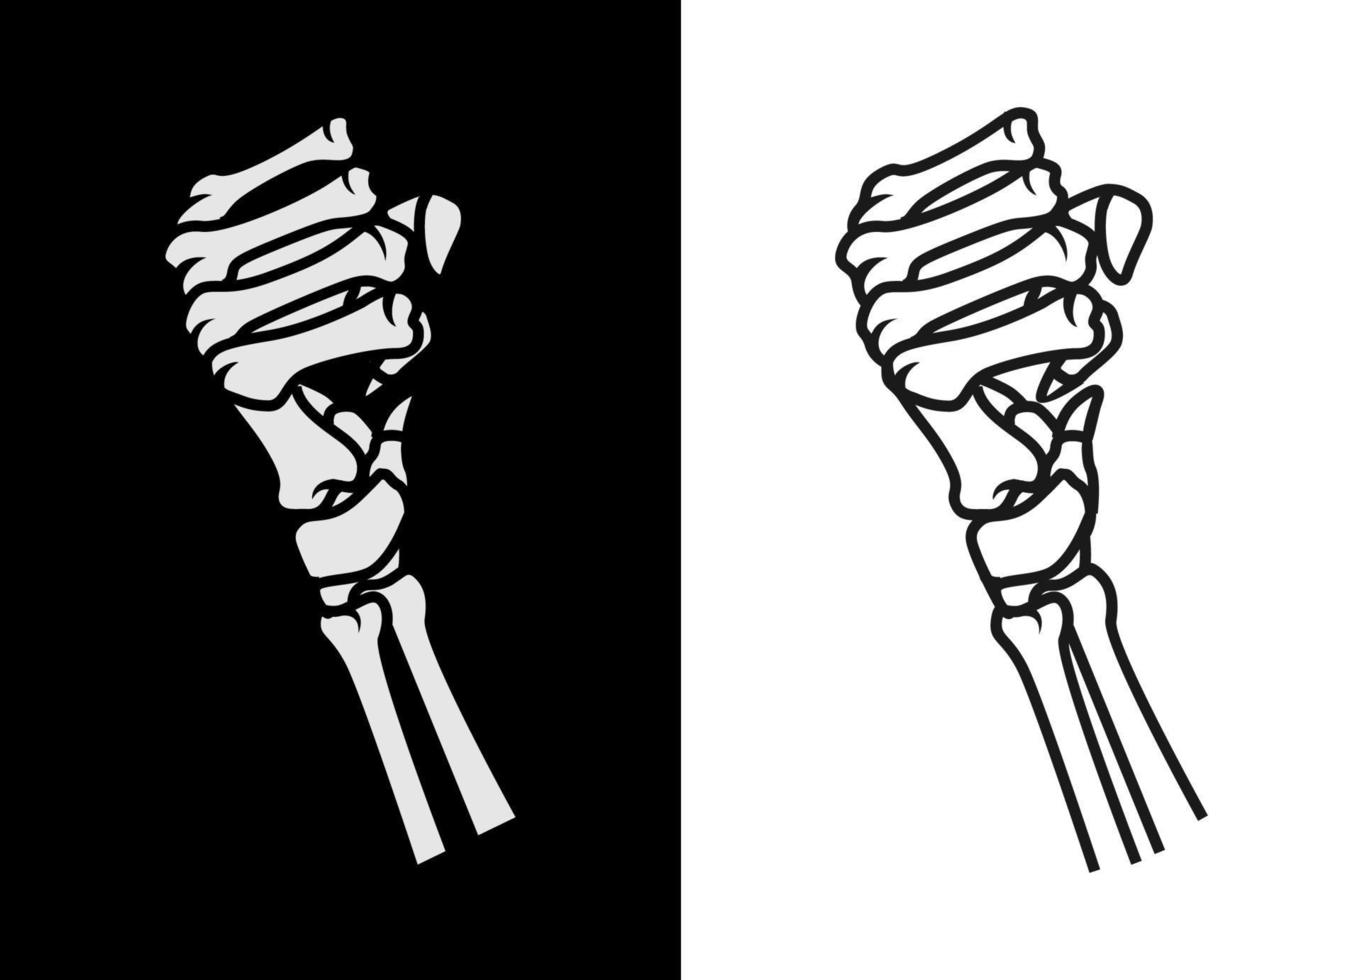 zwart-wit hand van menselijke schedel lijn kunst vectorillustratie. rockelement voor kledingontwerp, poster, merchandise, band. vector eps 10